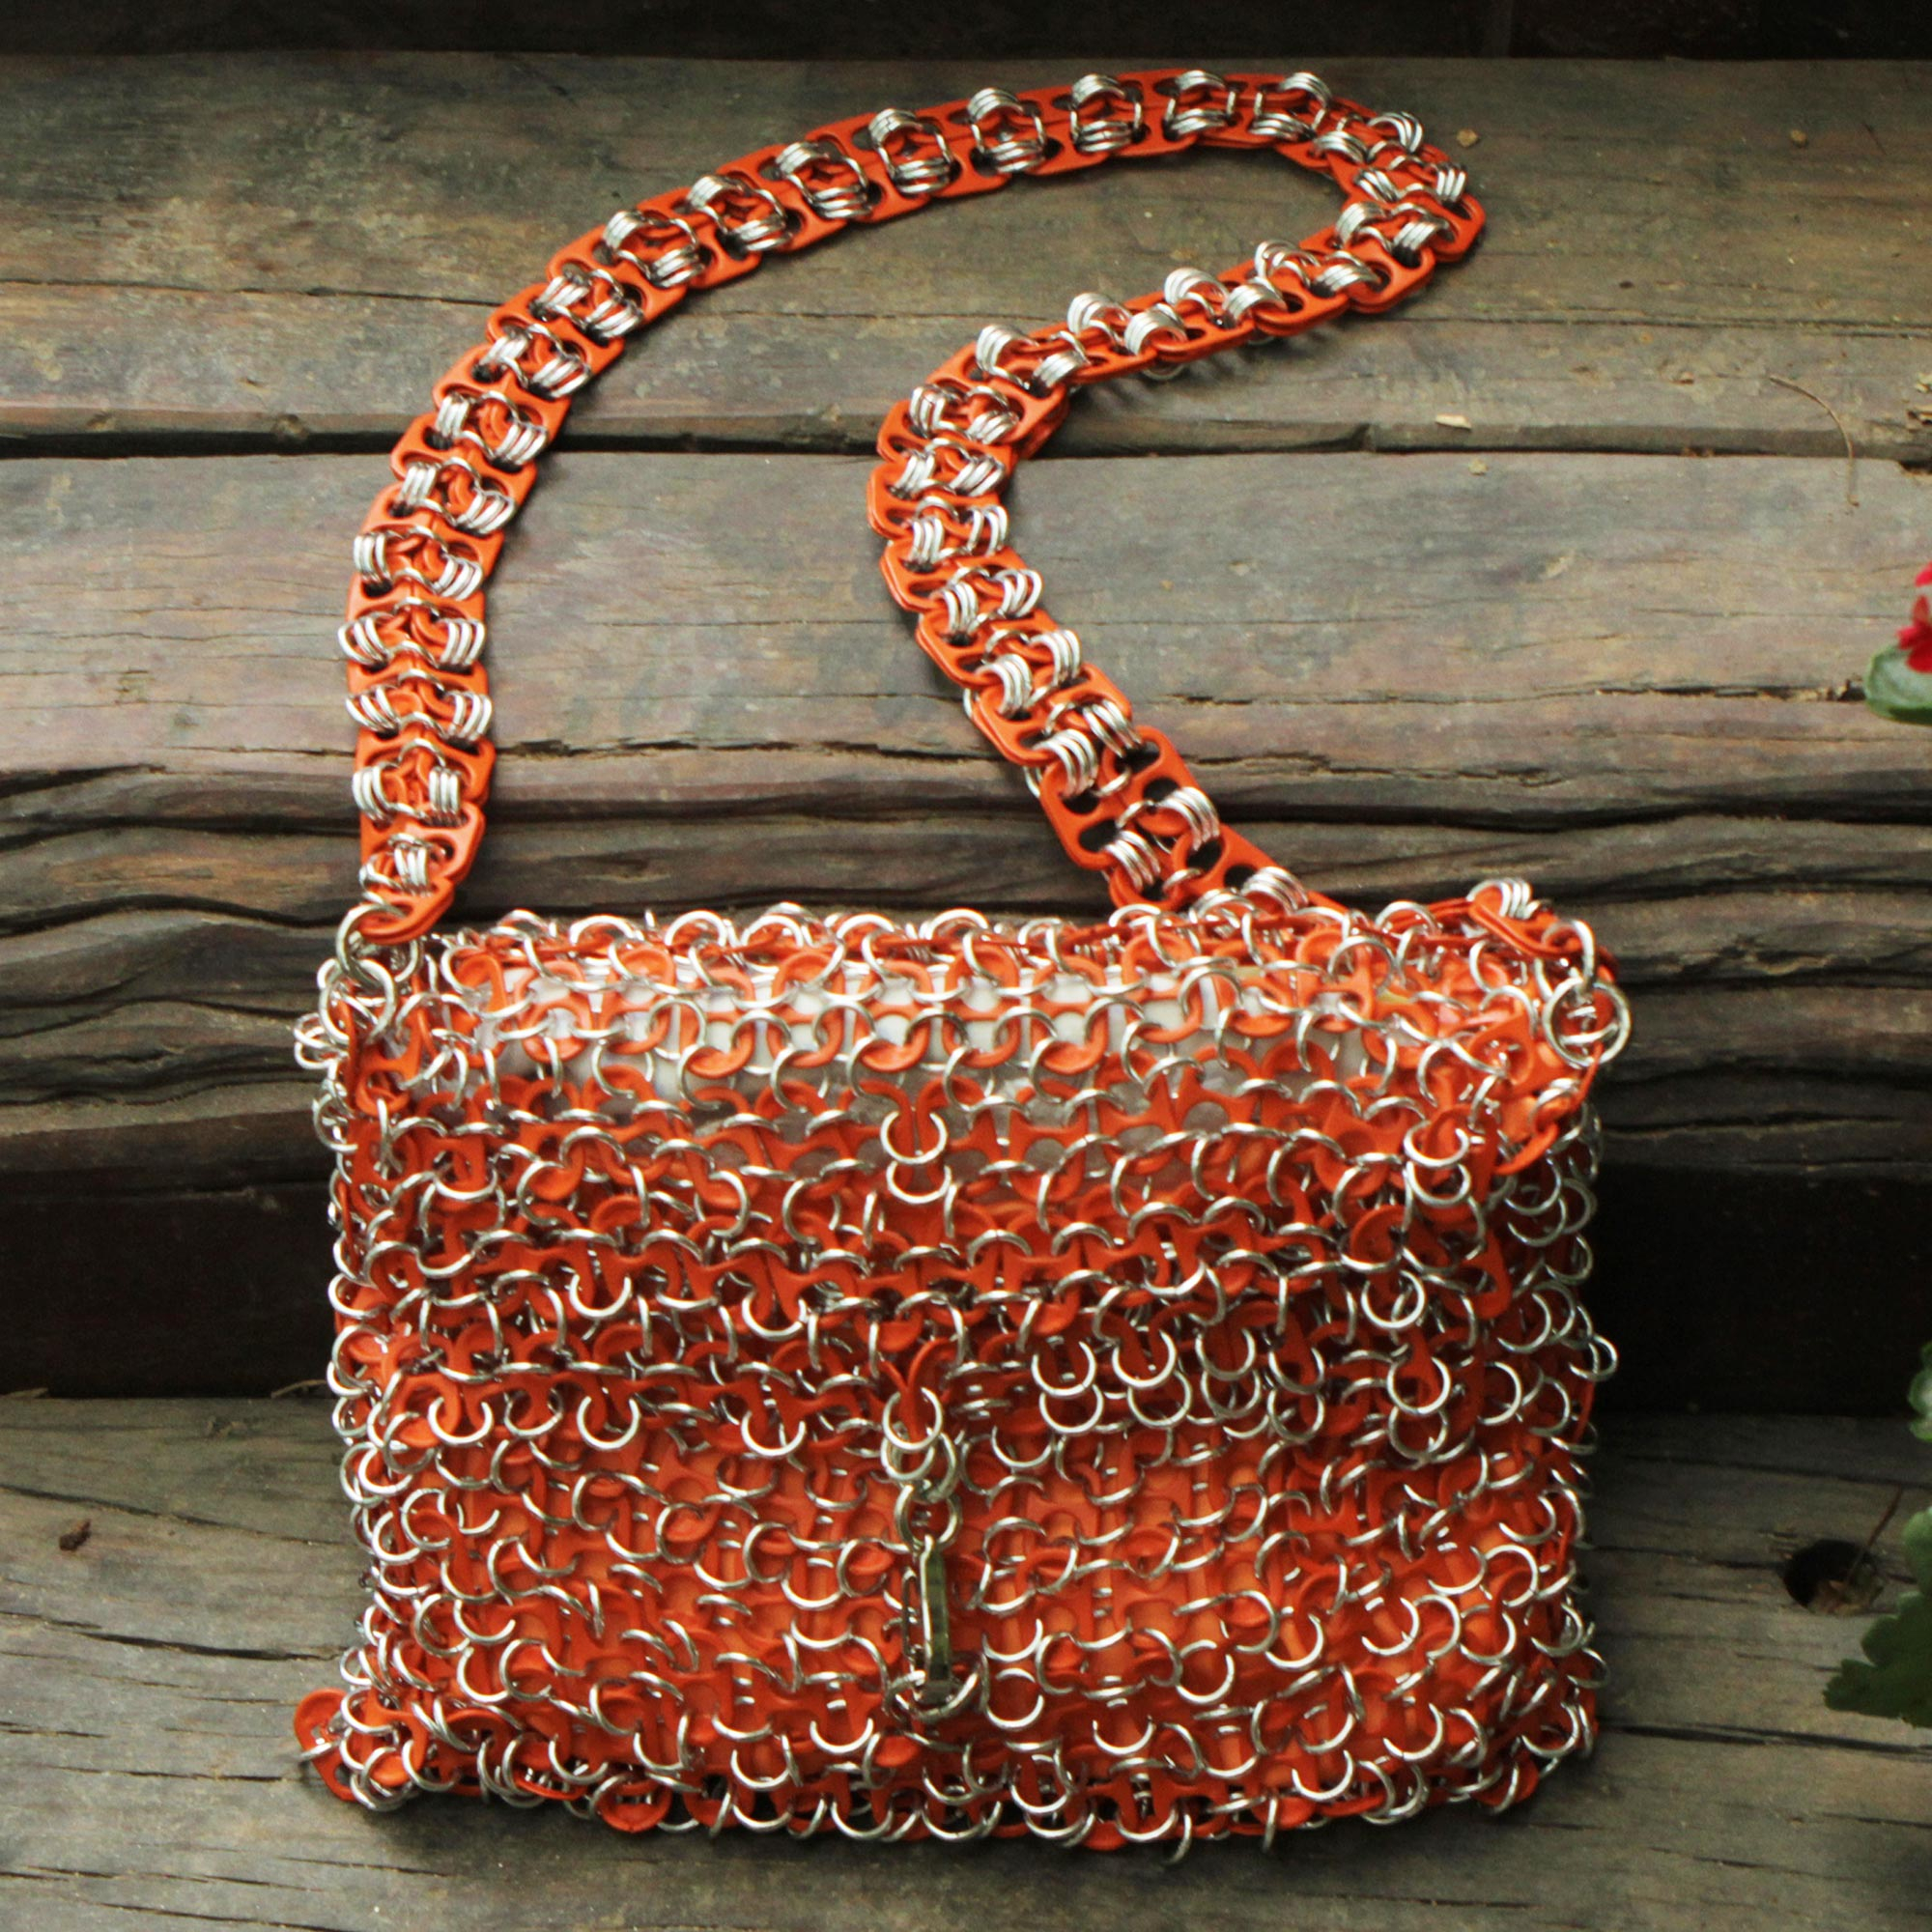 Express Silver Sparkle Shimmering Purse Handbag Clutch Shoulder Bag Chain